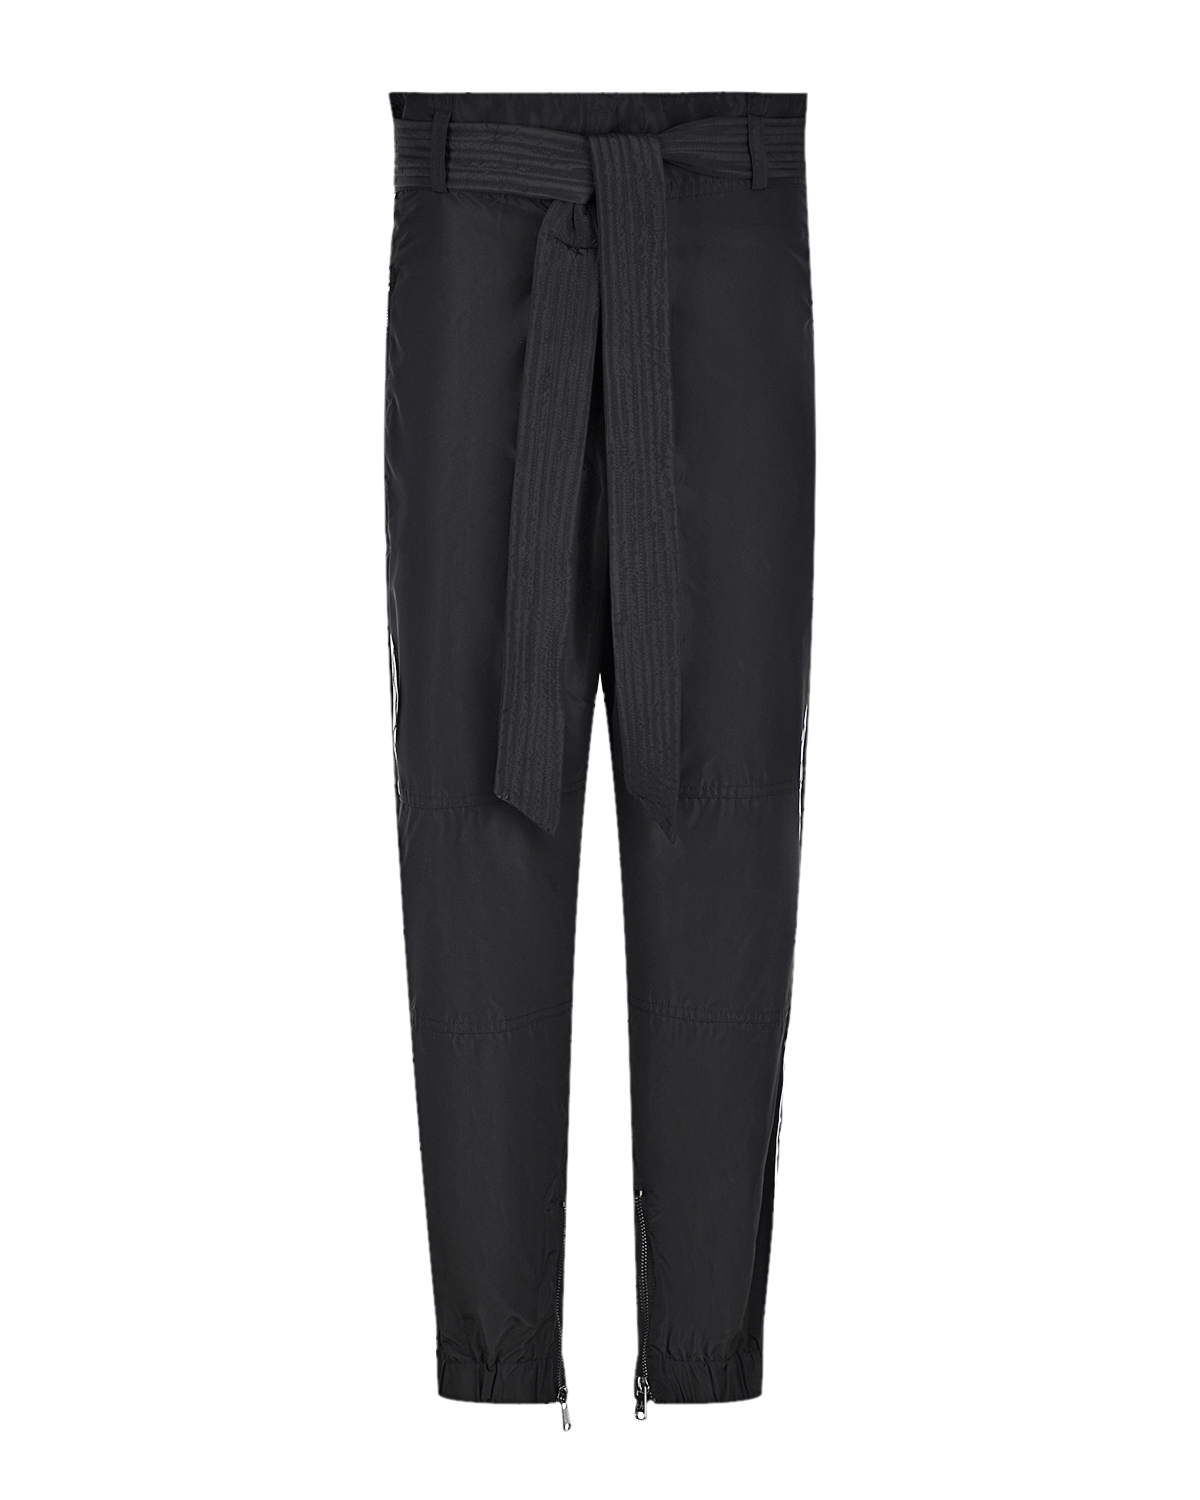 Черные брюки с широким поясом Deha, размер 40, цвет черный - фото 1